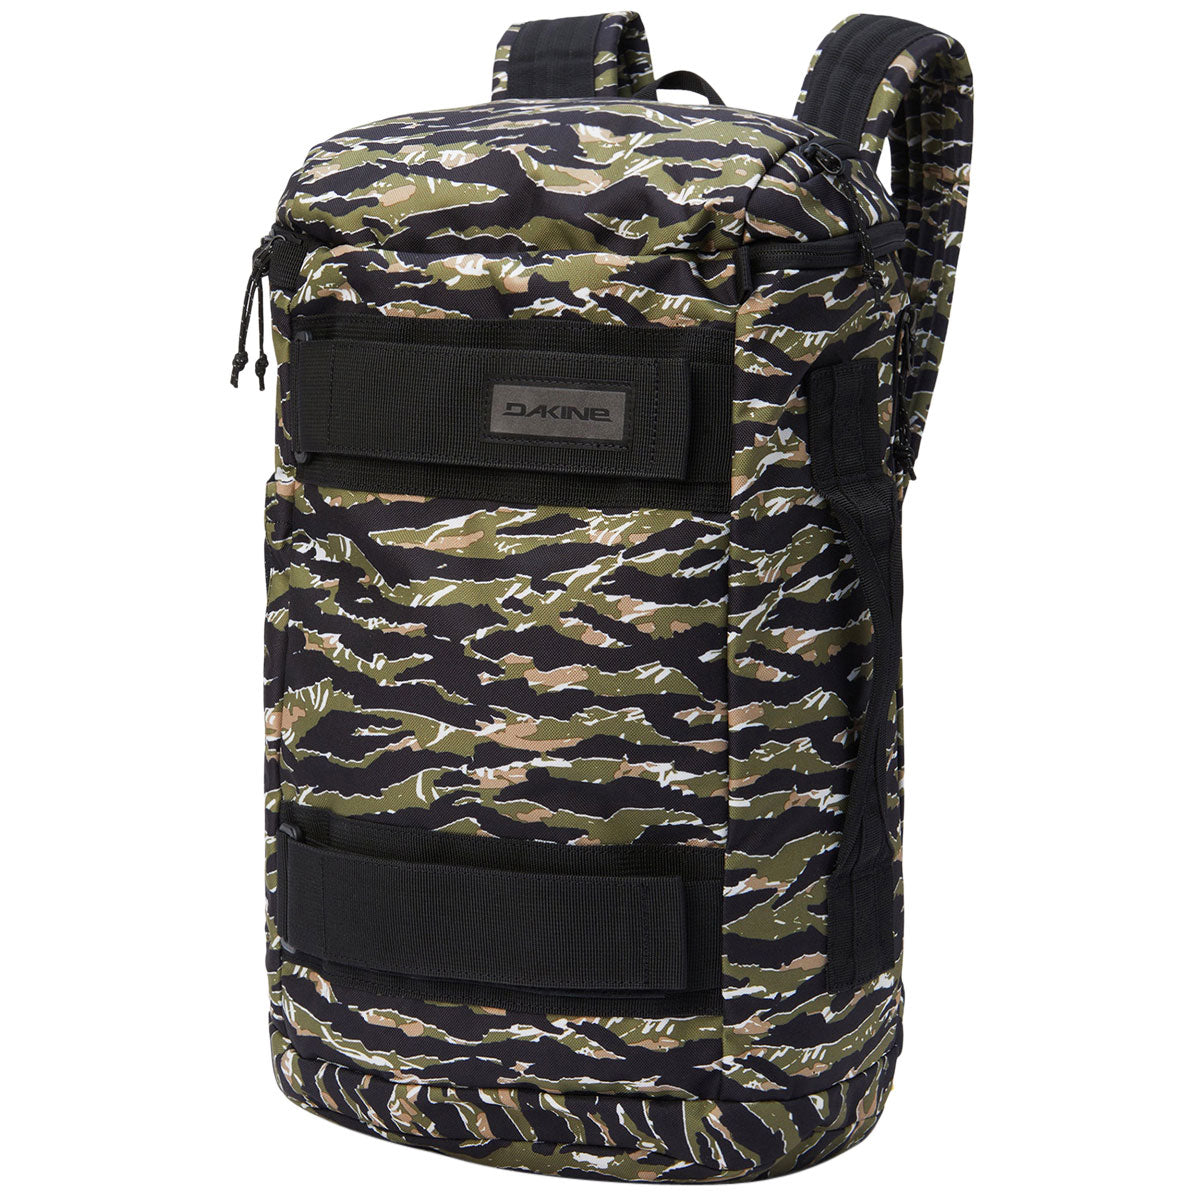 Dakine Mission Street Pack 25L Backpack - Tiger Camo image 1